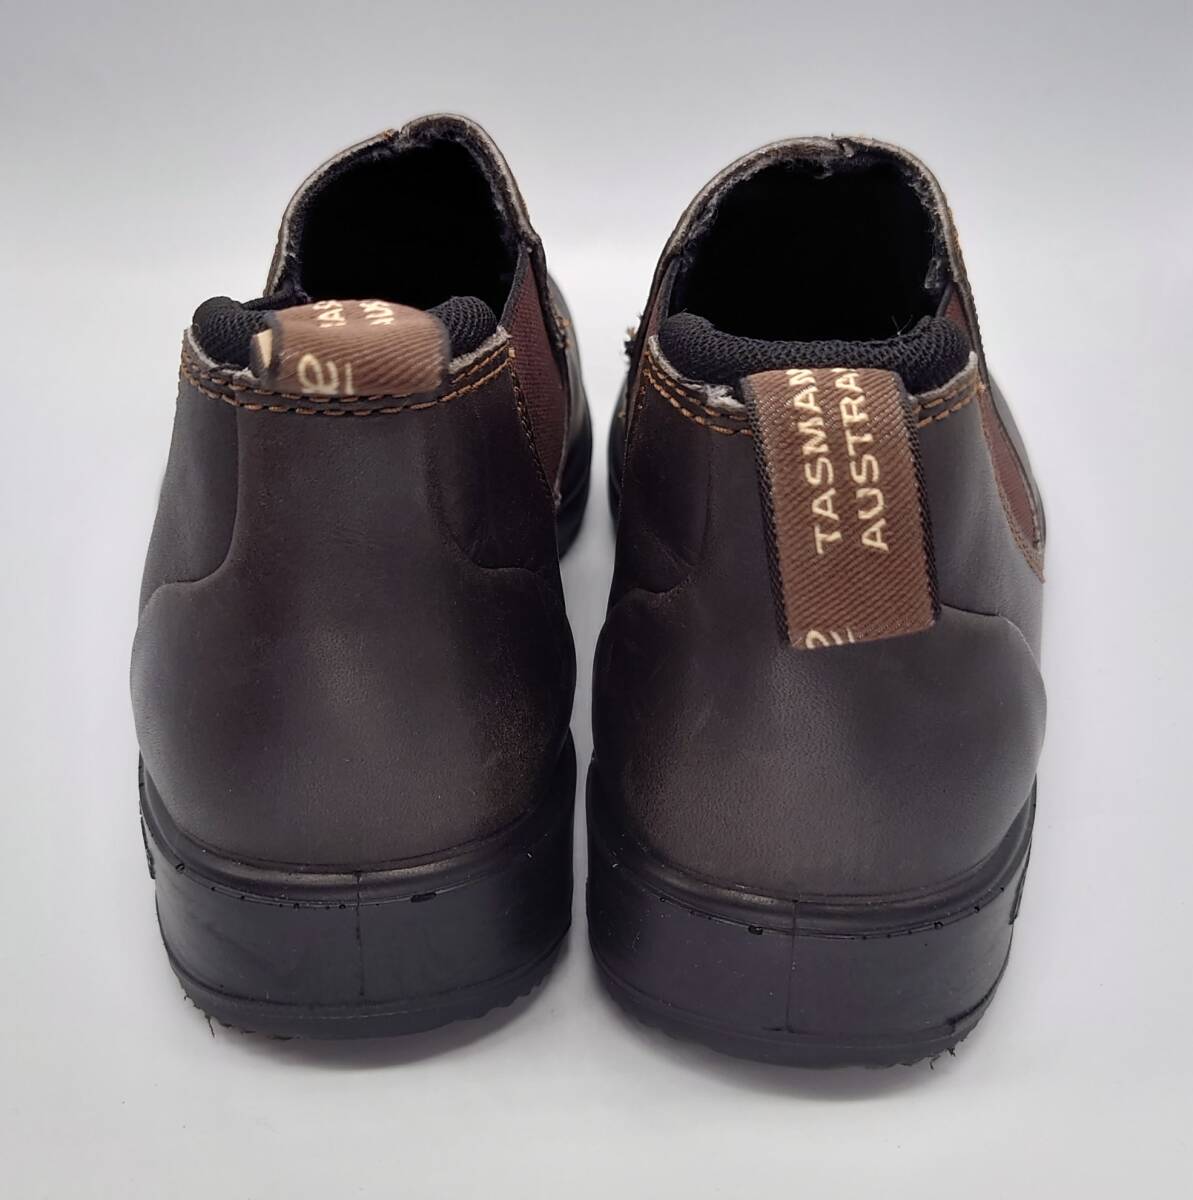 ユナイテッドアローズ取扱 Blundstone ブランドストーン ORIGINALS LOW CUT ローカット ブーツ 短靴 5 24.5cmレディース 防水レインブーツ_画像3